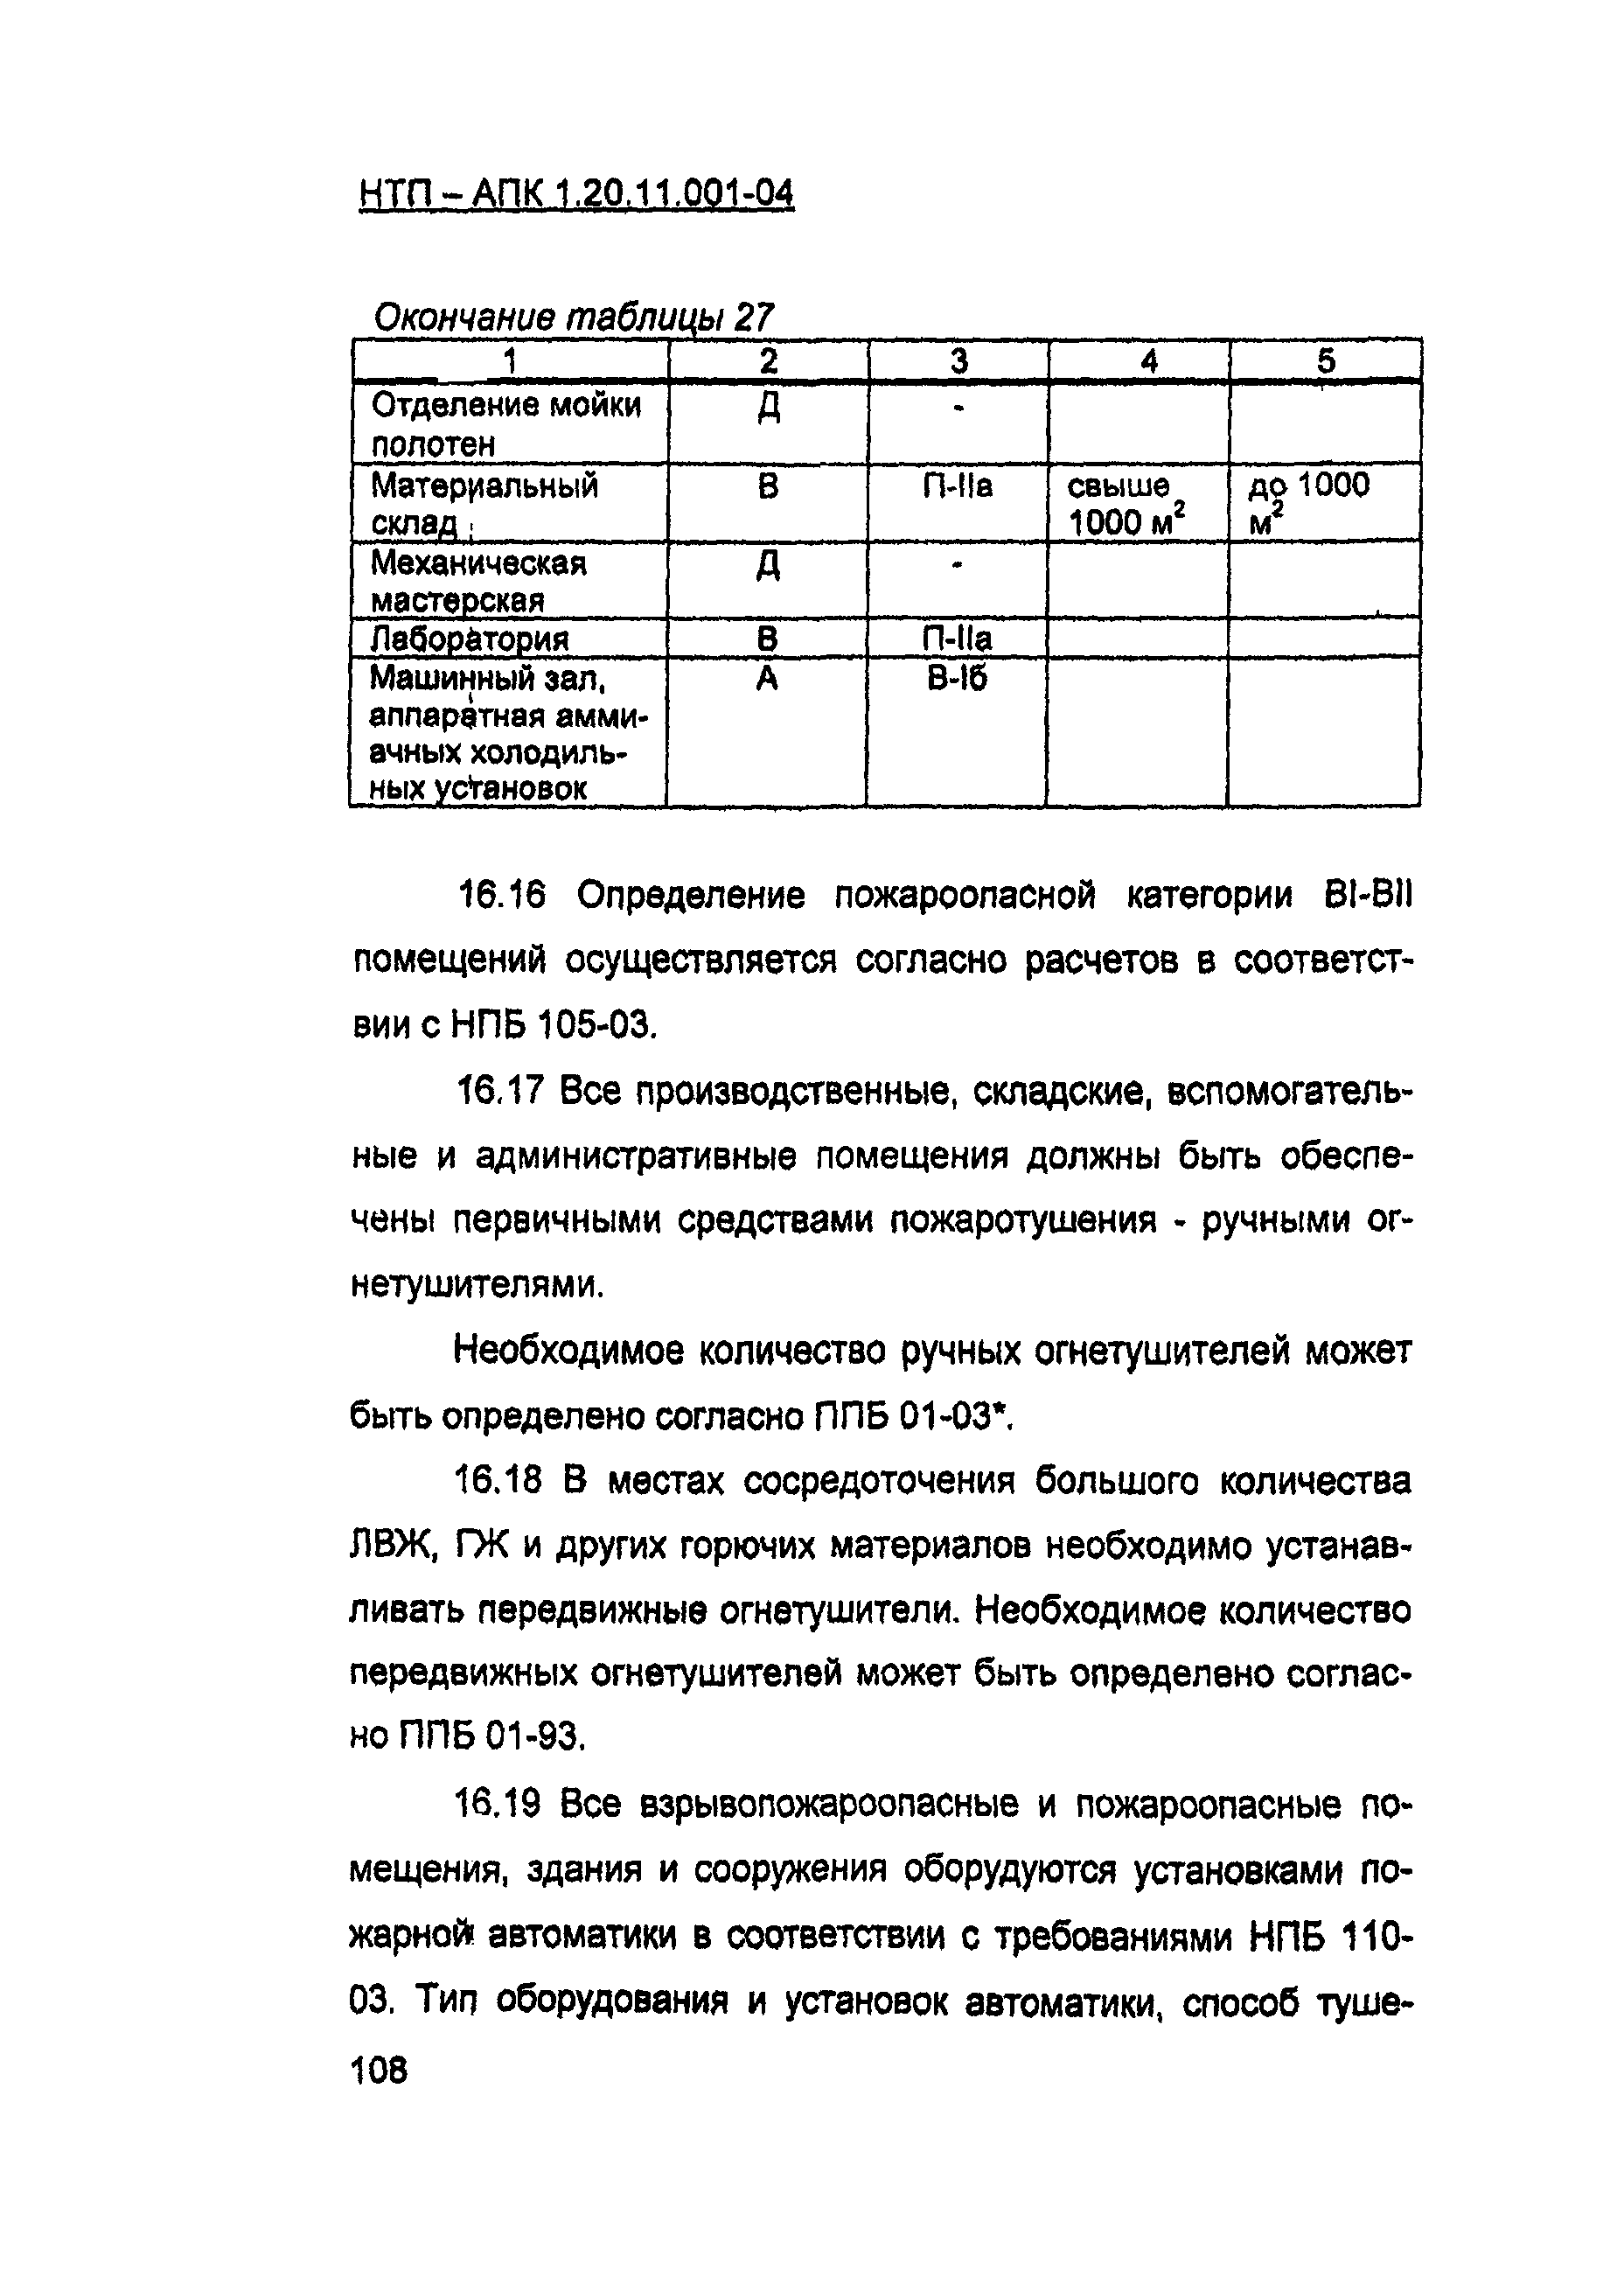 НТП-АПК 1.20.11.001-04